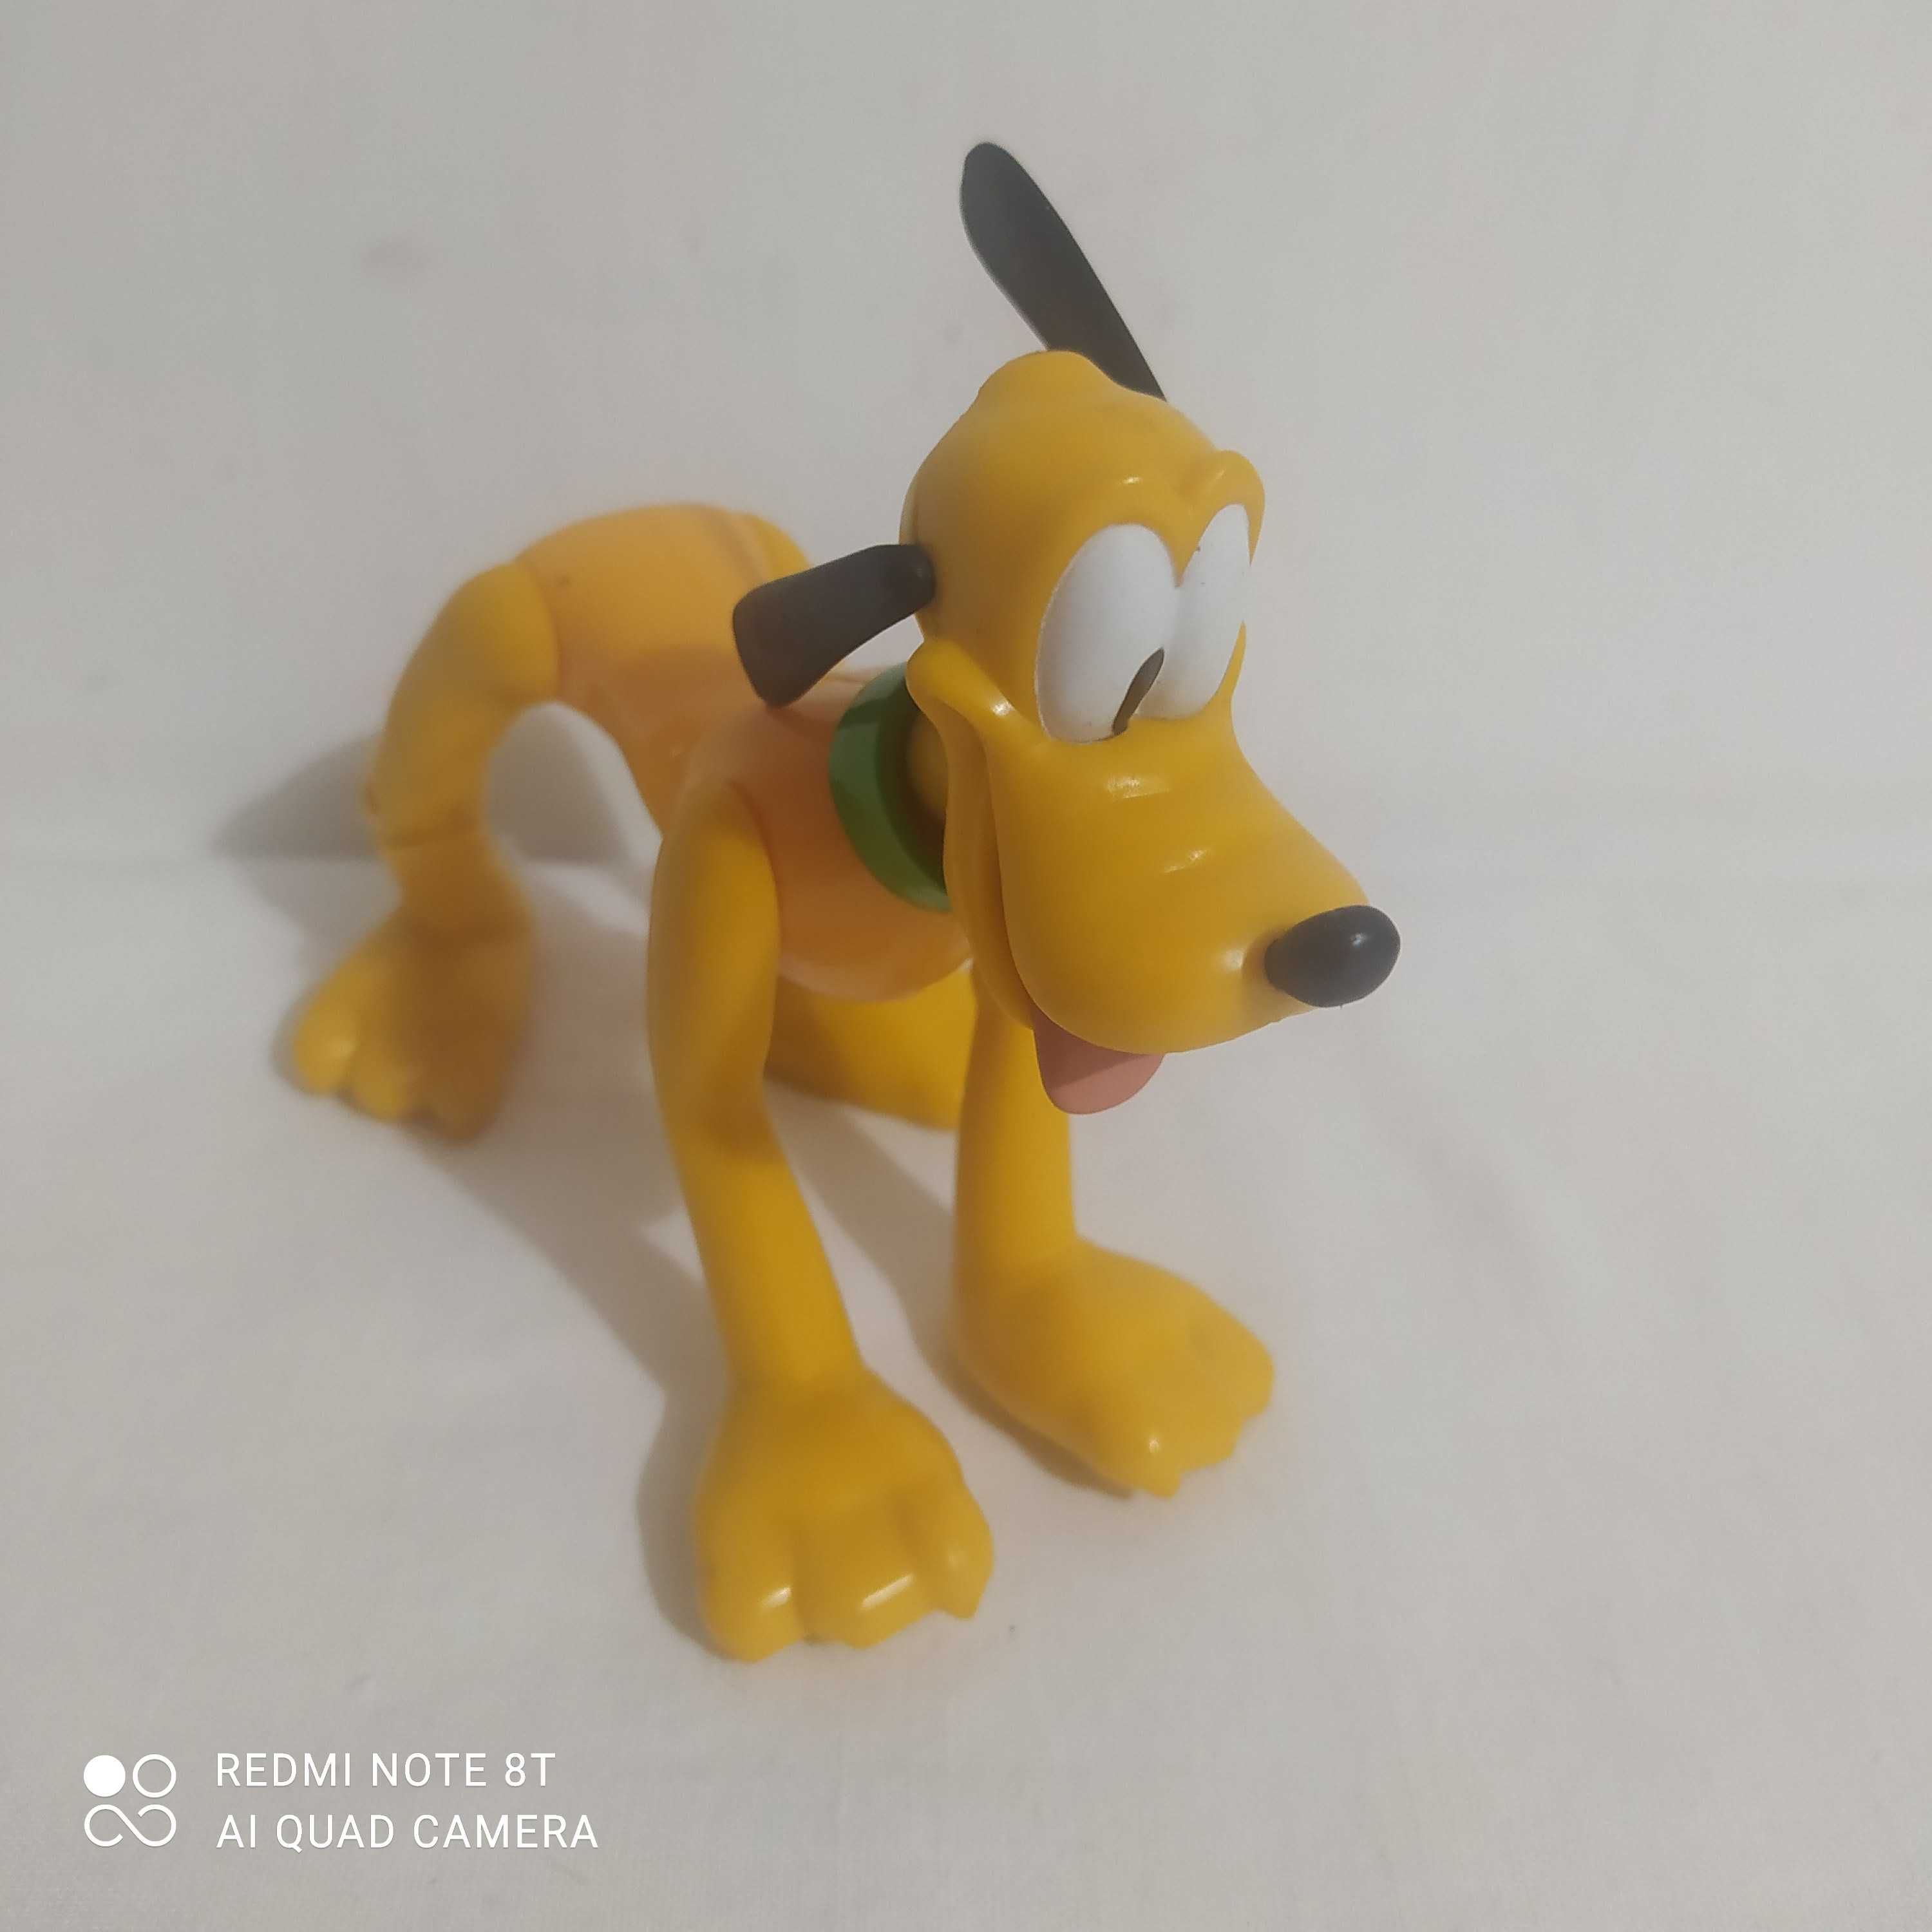 Figurka Pluto z bajki Disney